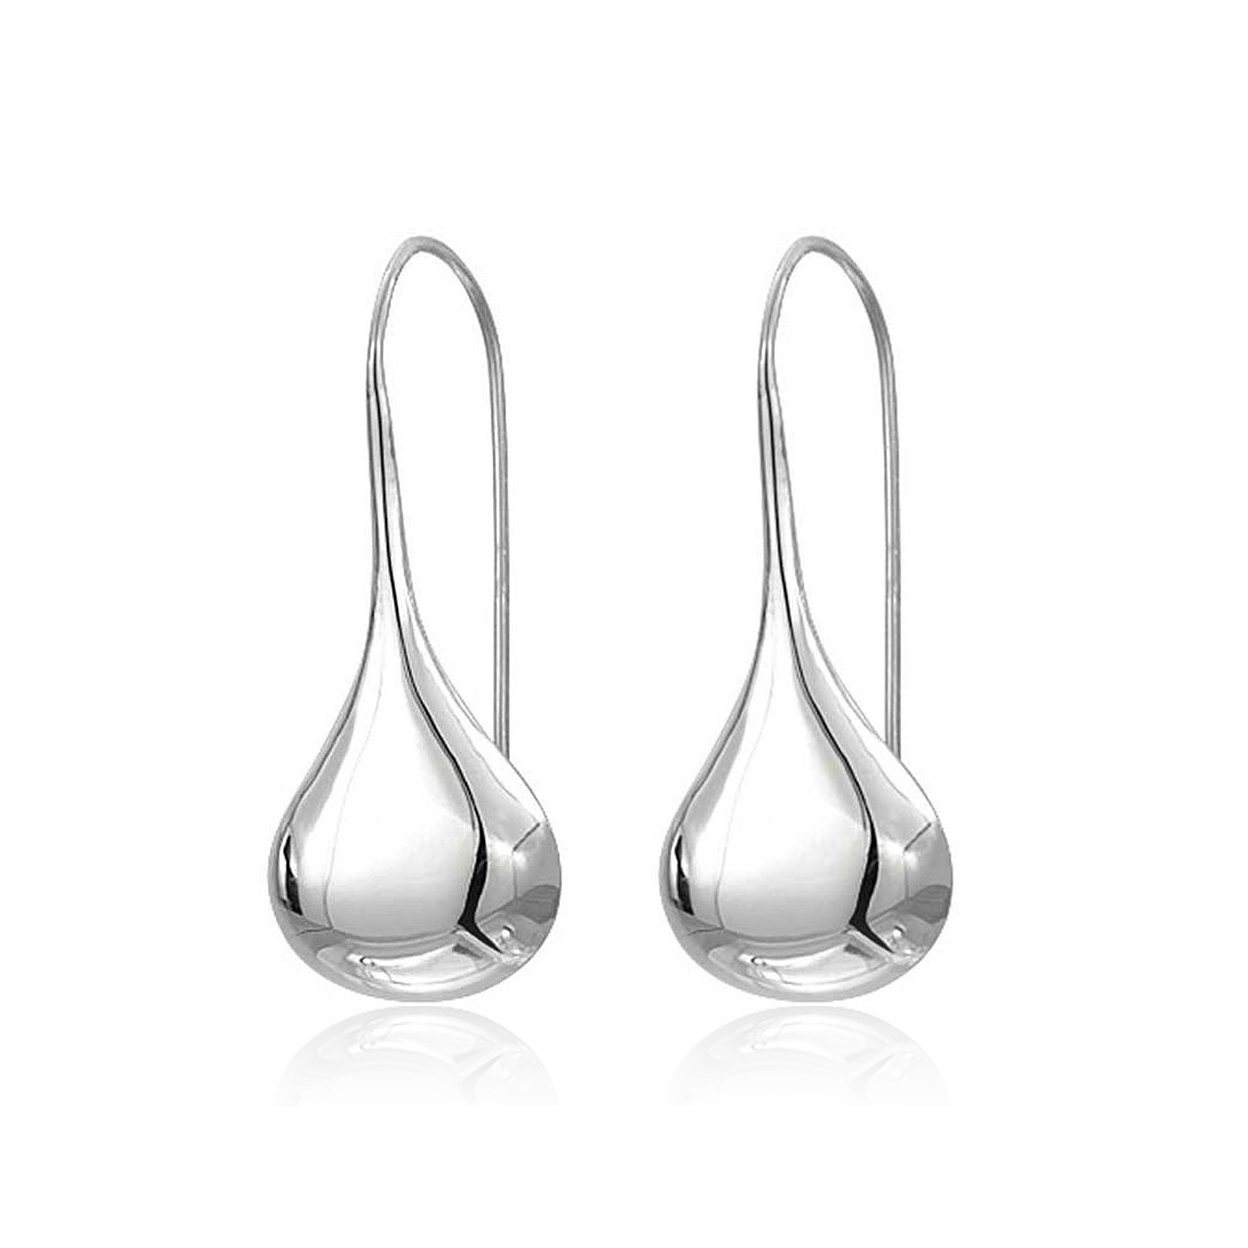 Intensity Tear Drop Hook Earrings - 925 Sterling Silver